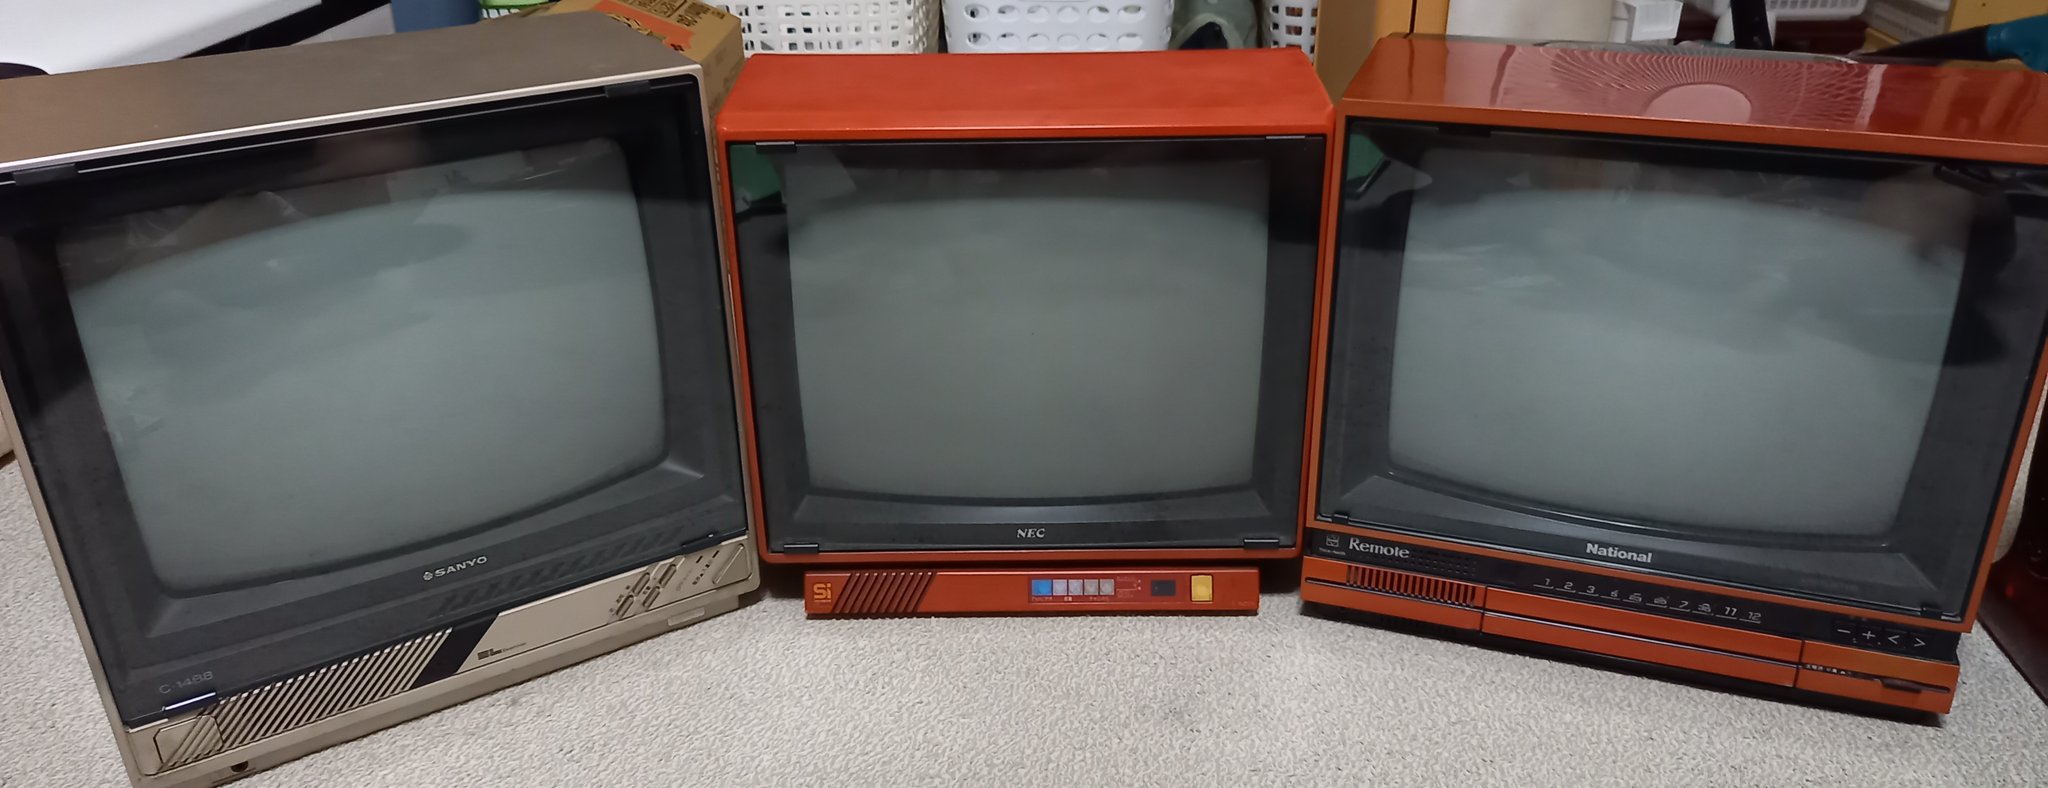 ゲームセンター これは所有しているファミコン世代のブラウン管テレビ 左から Sanyo 1985年製1 6月期 Nec 1985年製 ビデオ入力端子付き National 1986年製1 6期 ガラスを張っていて静電気が生じないのでゲームには最適だと思います レトロゲーム